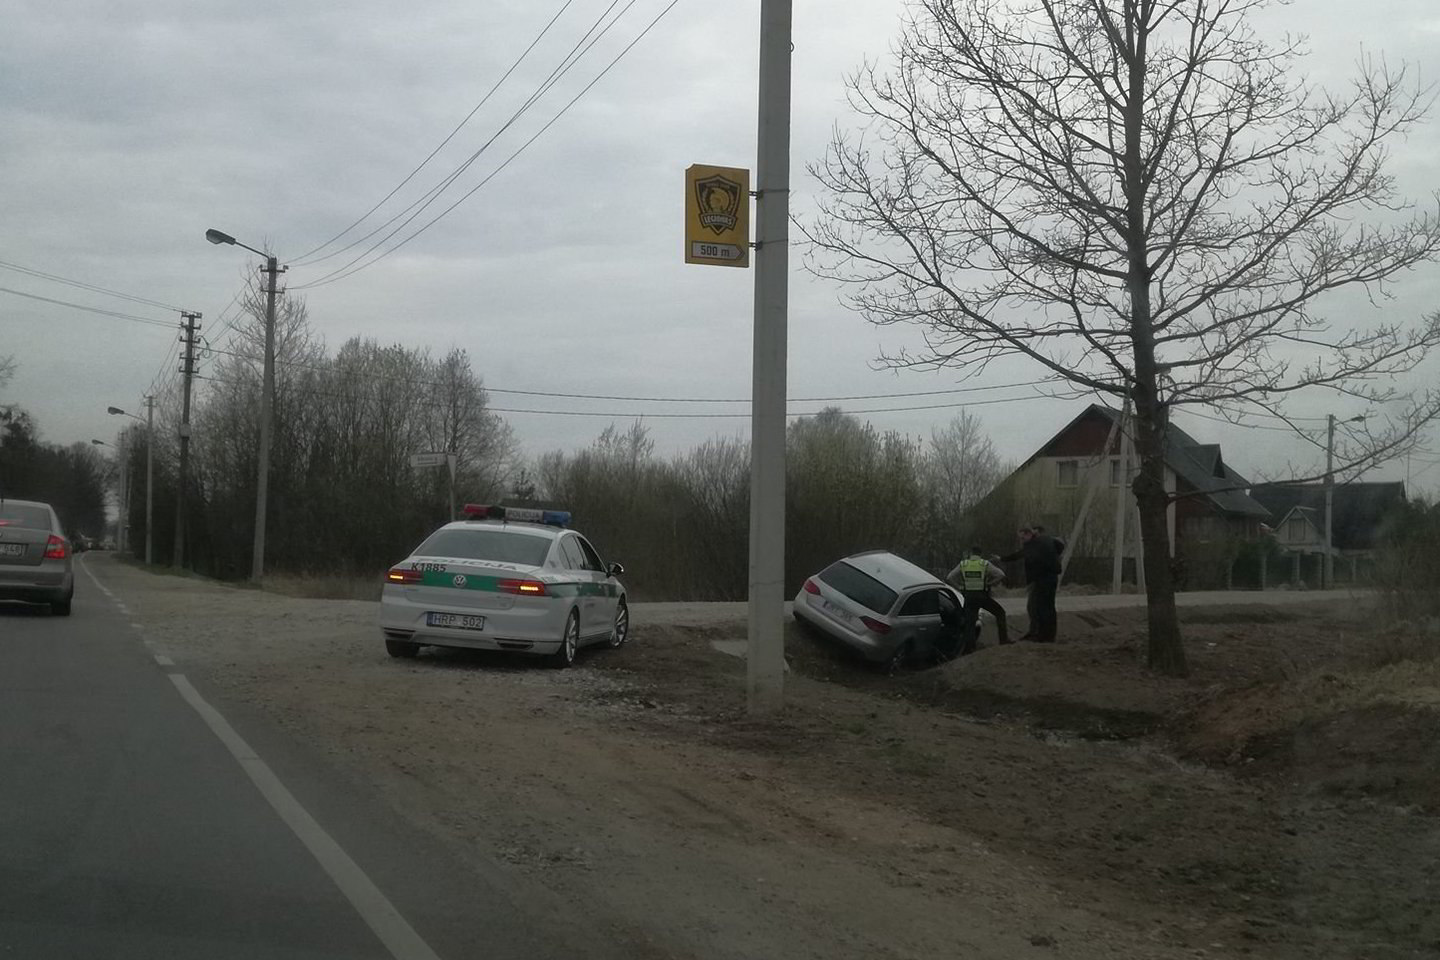  Trys girti vyrai buvo sulaikyti prie automobilio „Audi“, kuris rėžėsi į „Jeep“, pabėgo iš įvykio vietos, o tada įlėkė į griovį.<br> Kur stovi policija Kaune nuotr. 